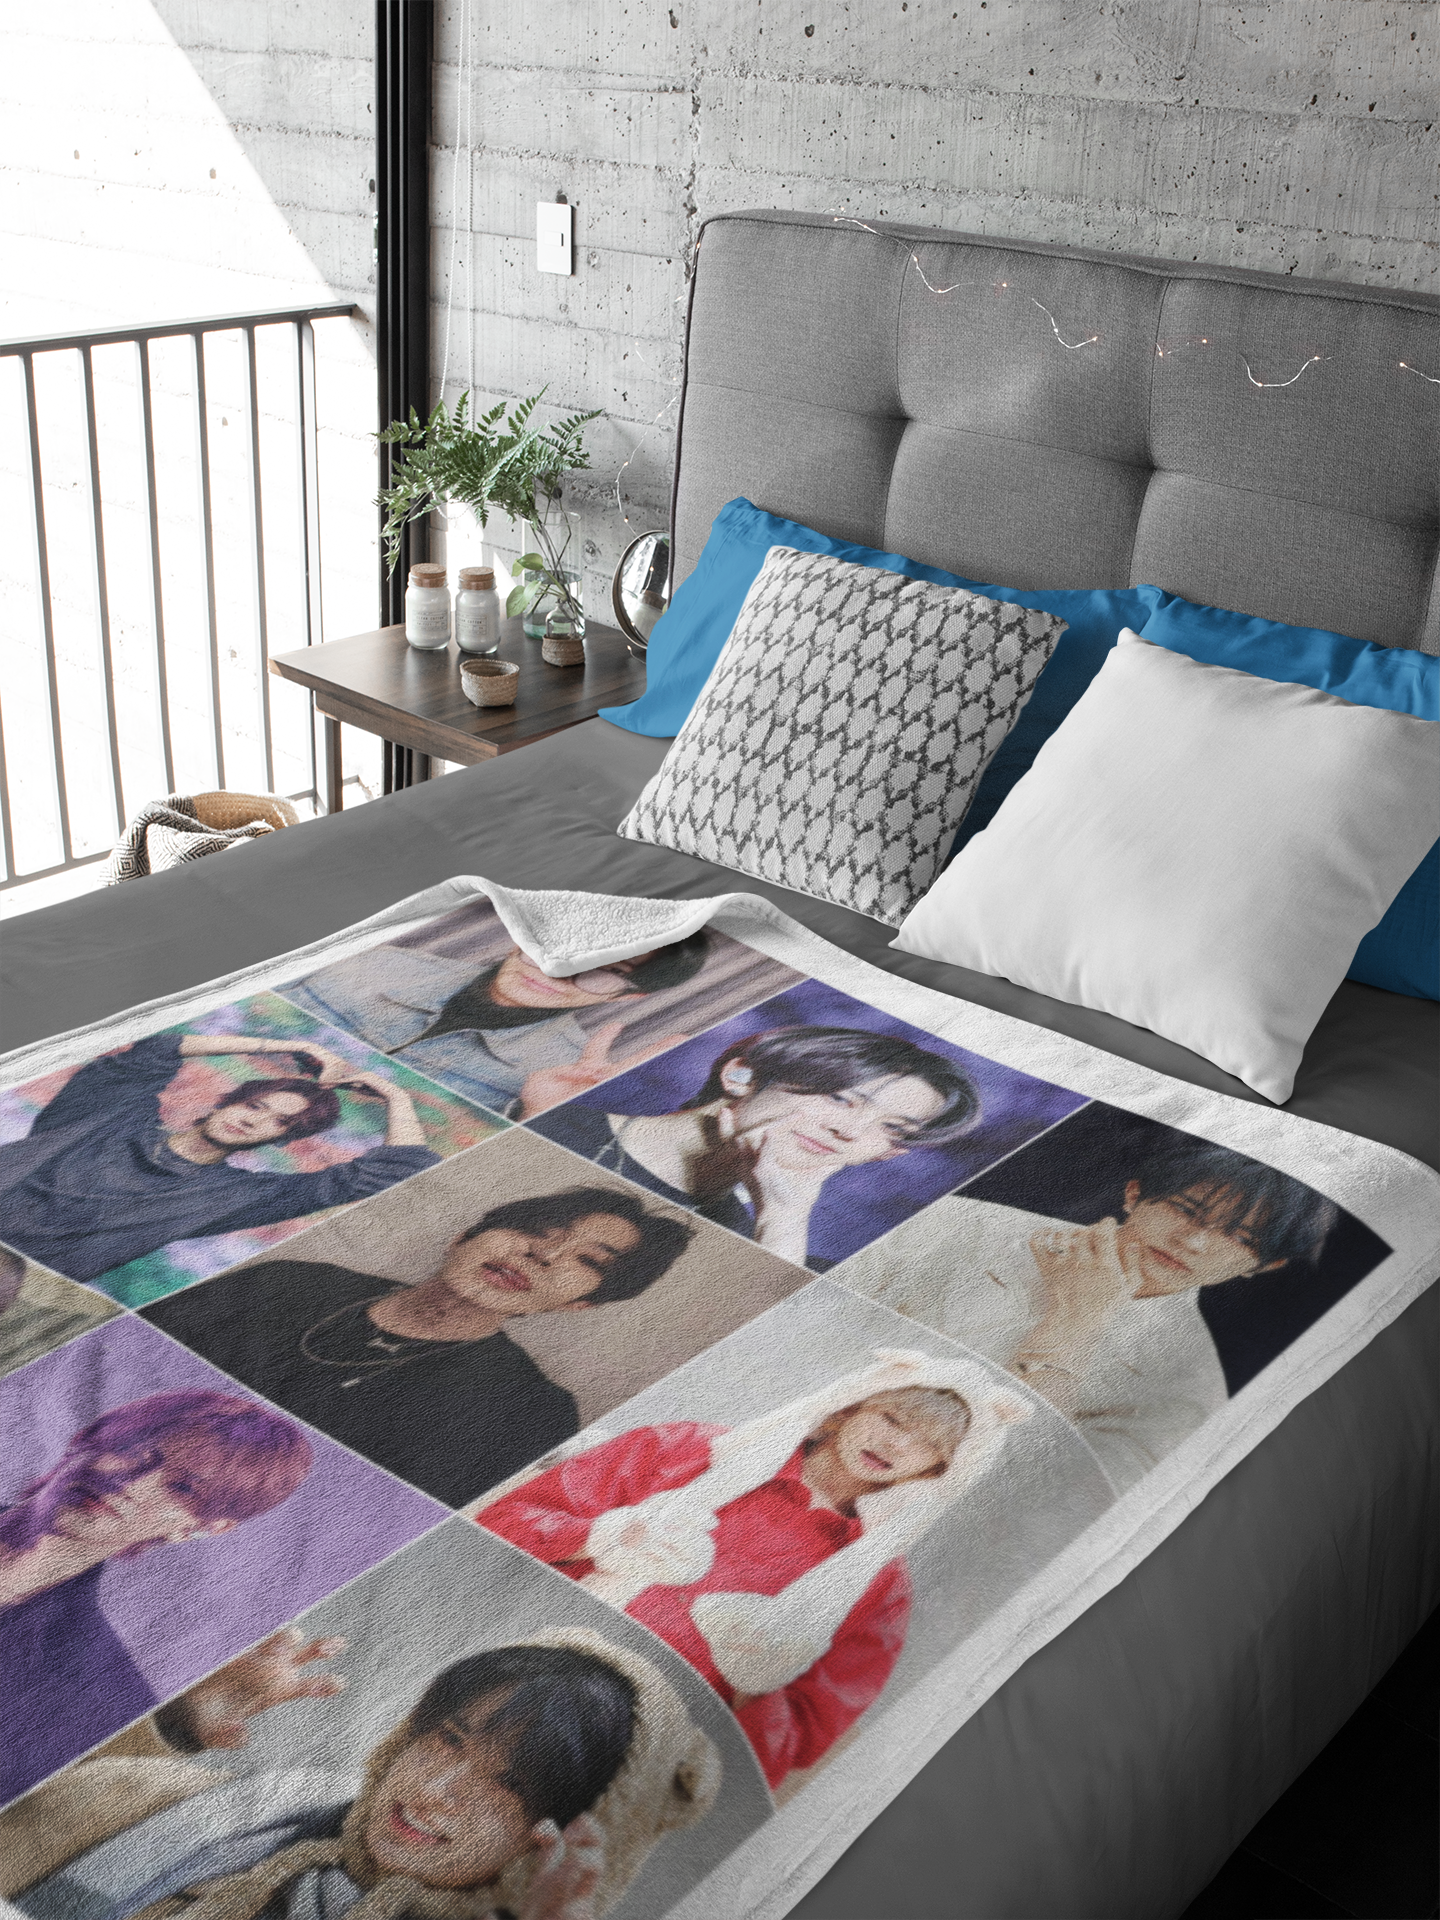 heeseung photo collage velveteen blanket